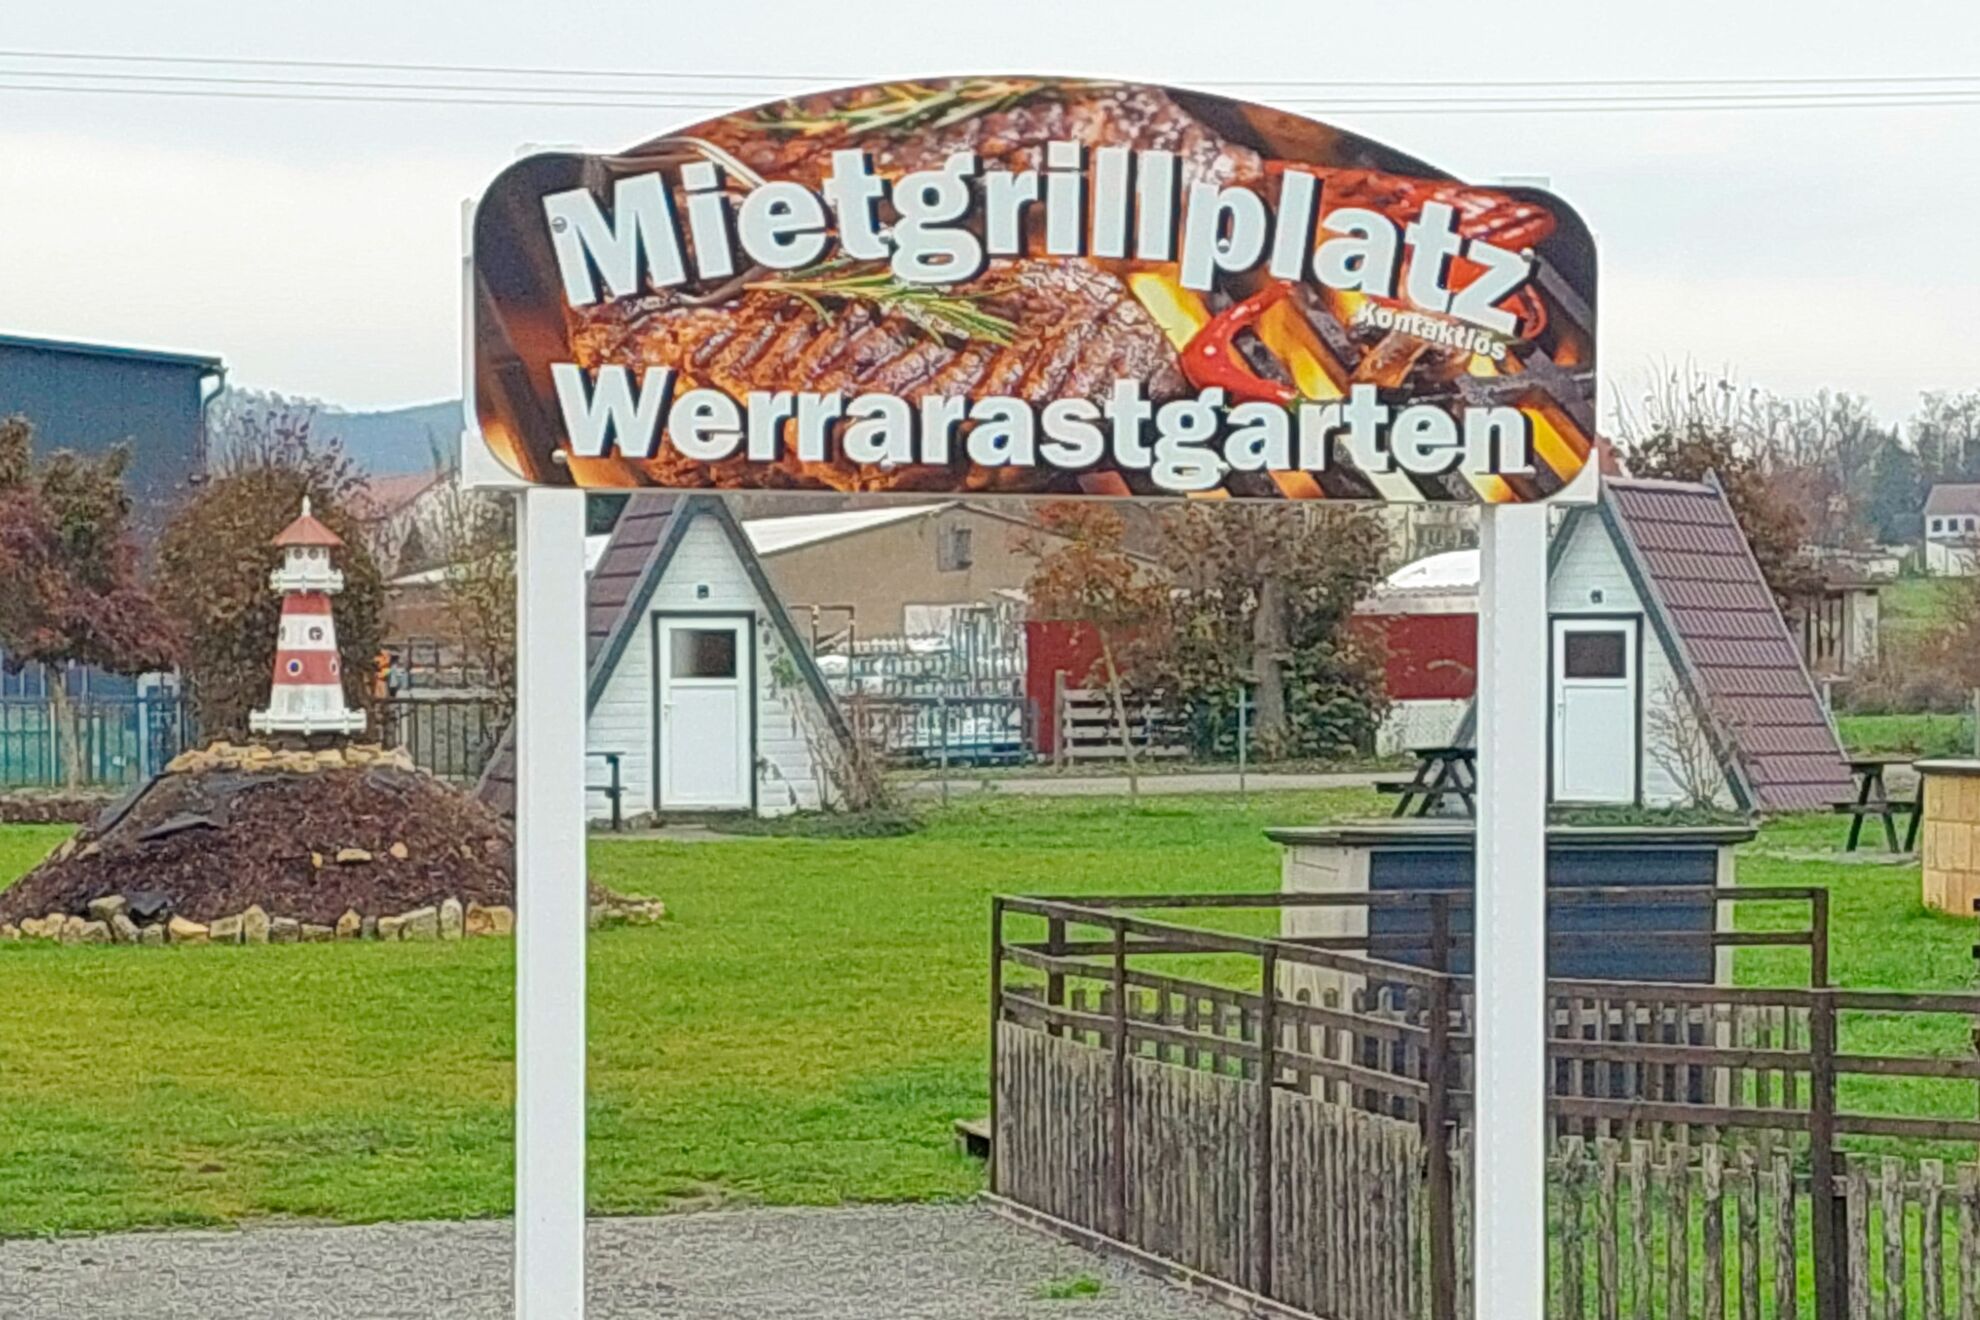 Werra-Rastgarten - Grillplatz